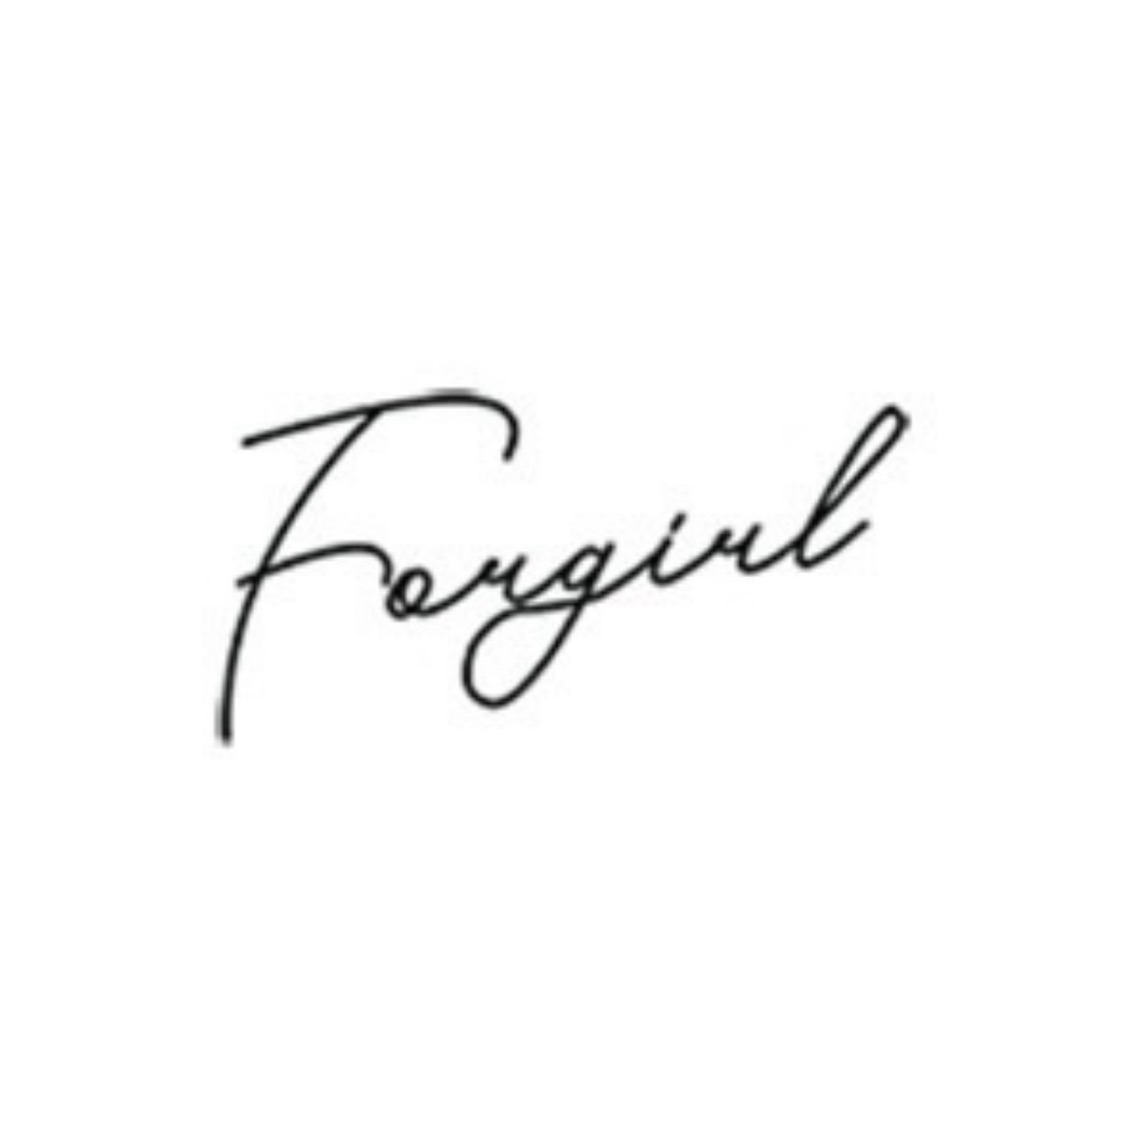 Forgirl_vn